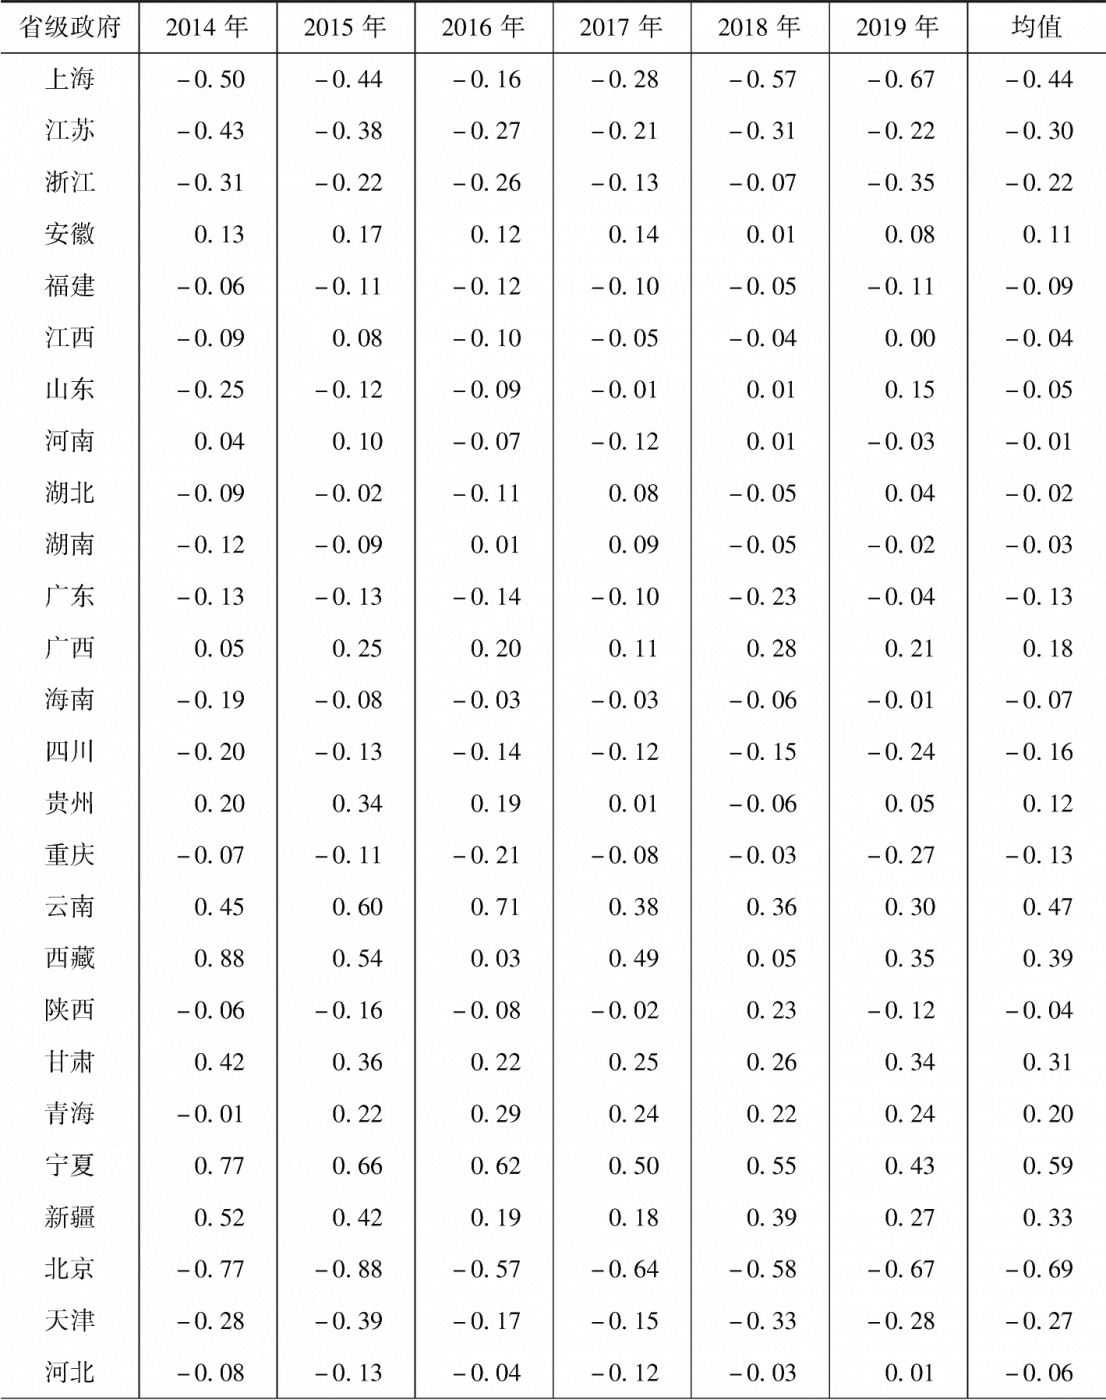 附表13-1 2014～2019年省级政府效率损失的标准化值